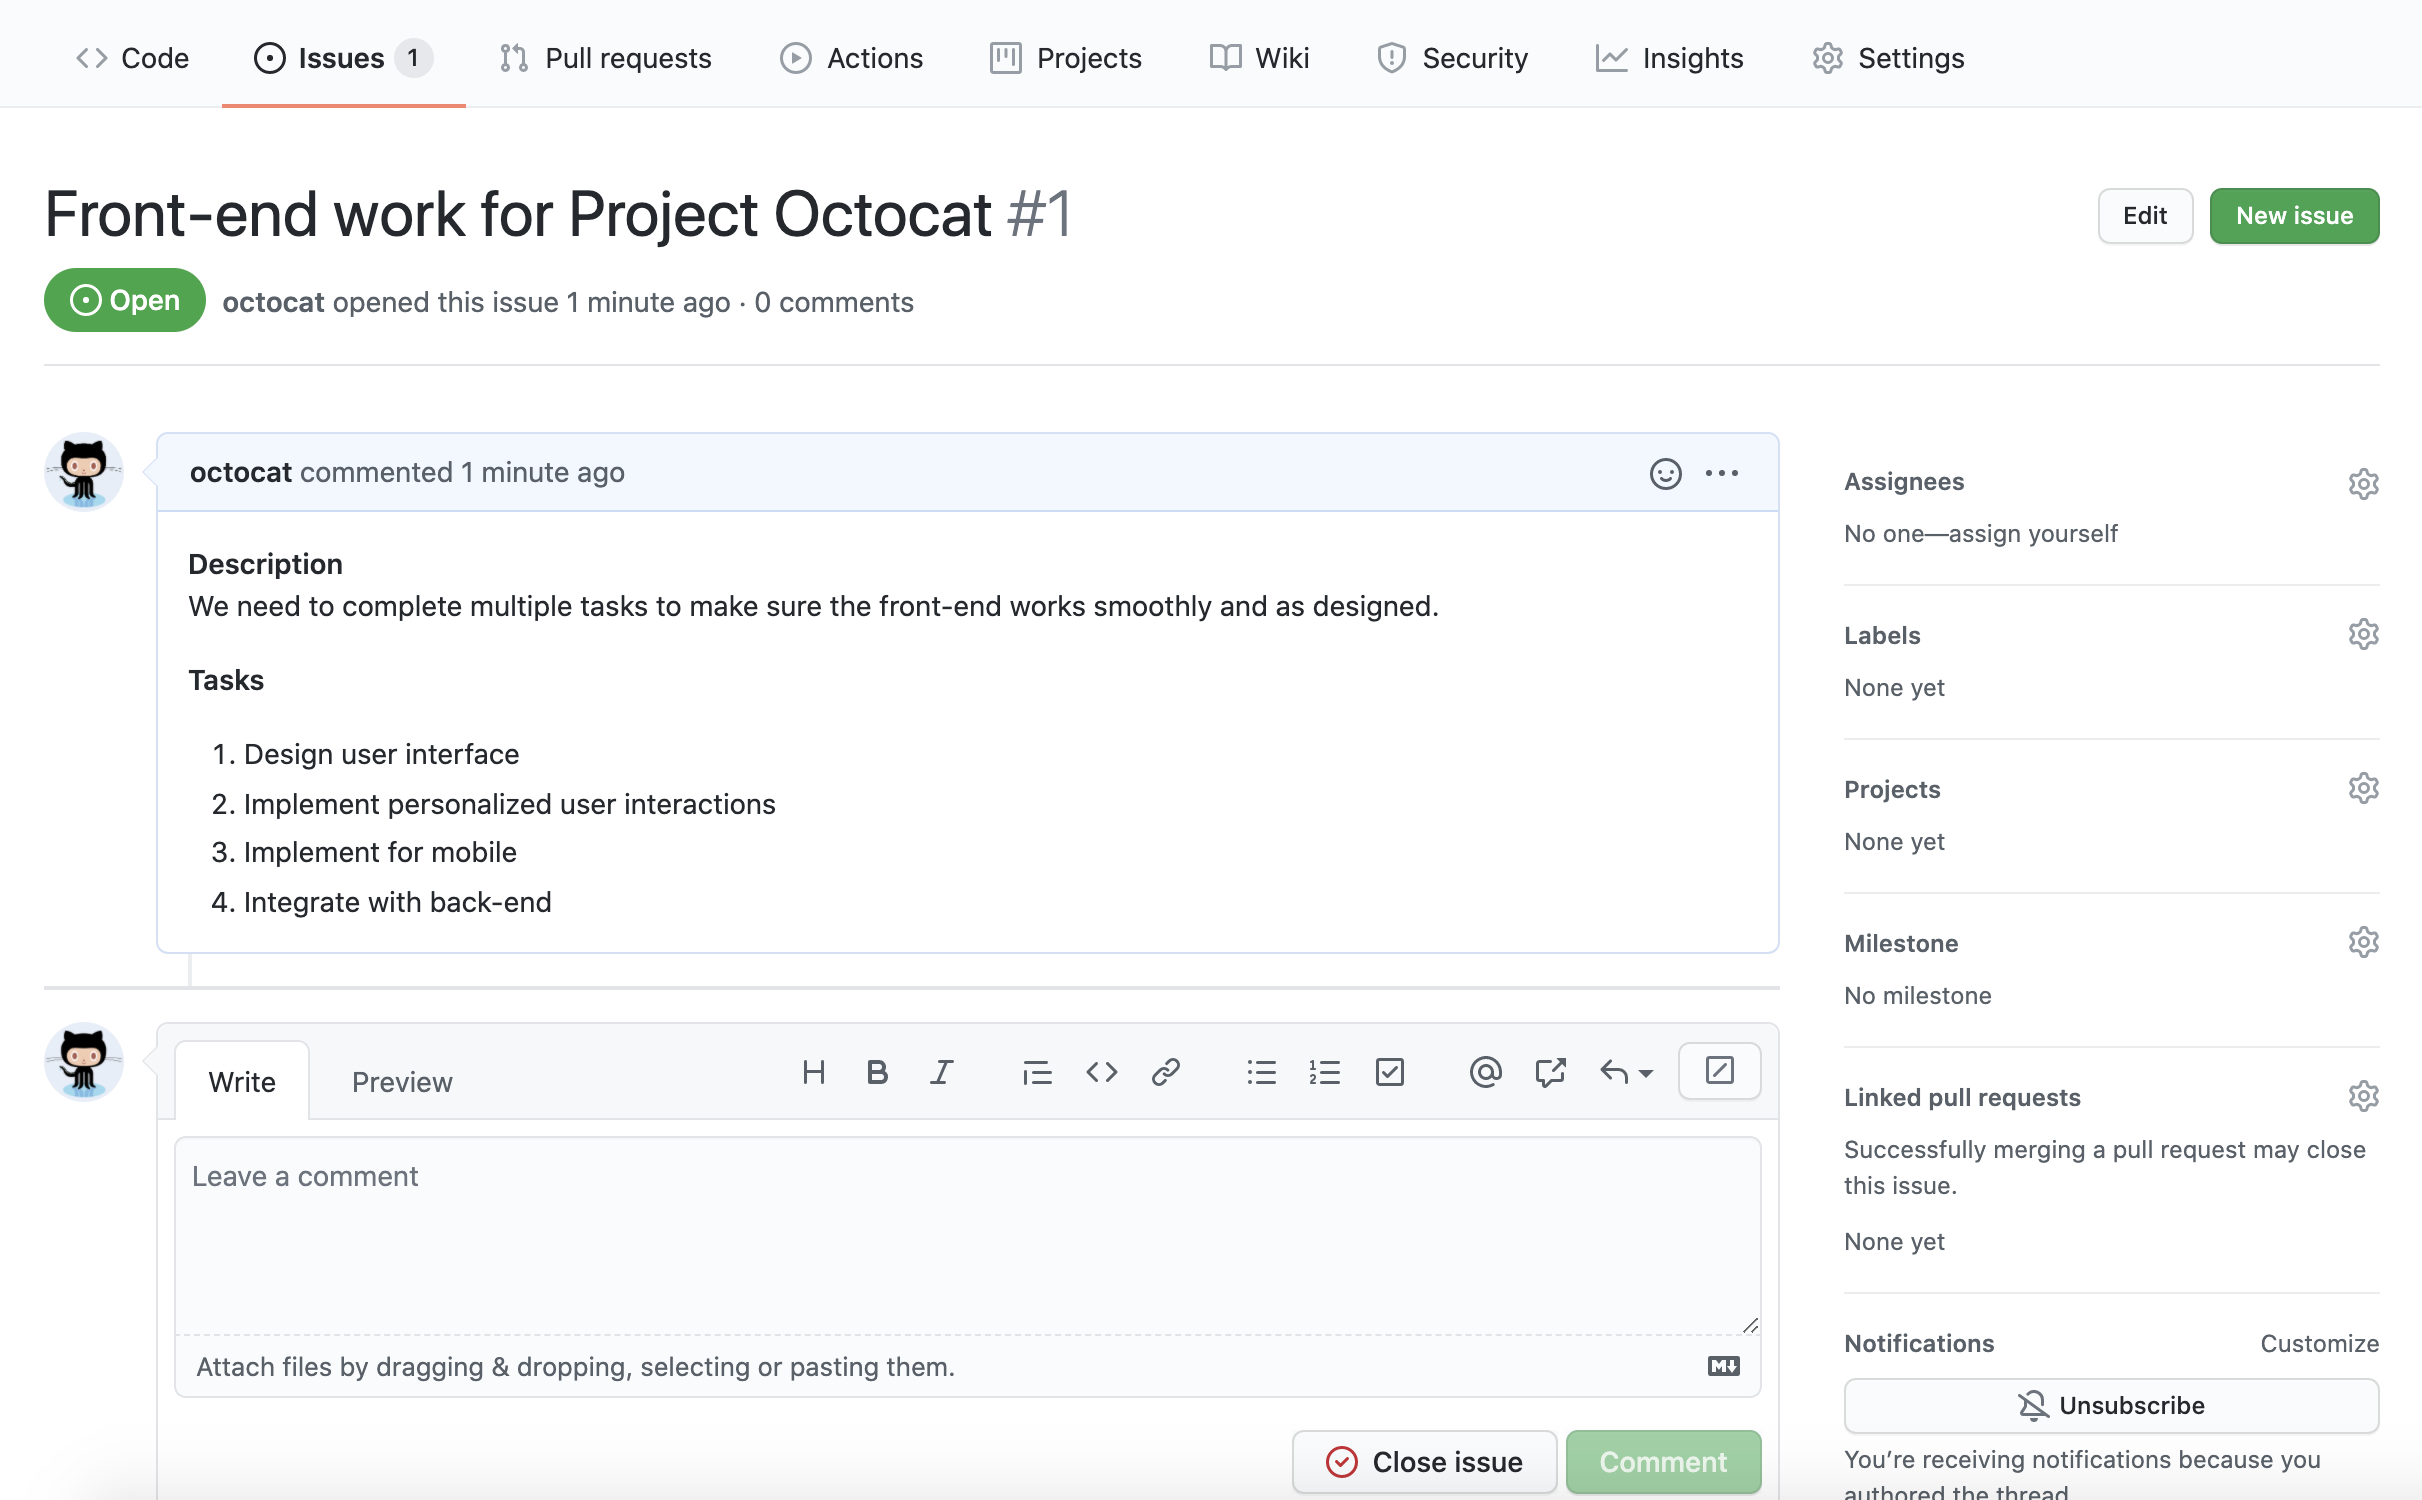 名为“Octocat 项目前端工作”的议题的屏幕截图。 议题正文包含要完成的任务列表。